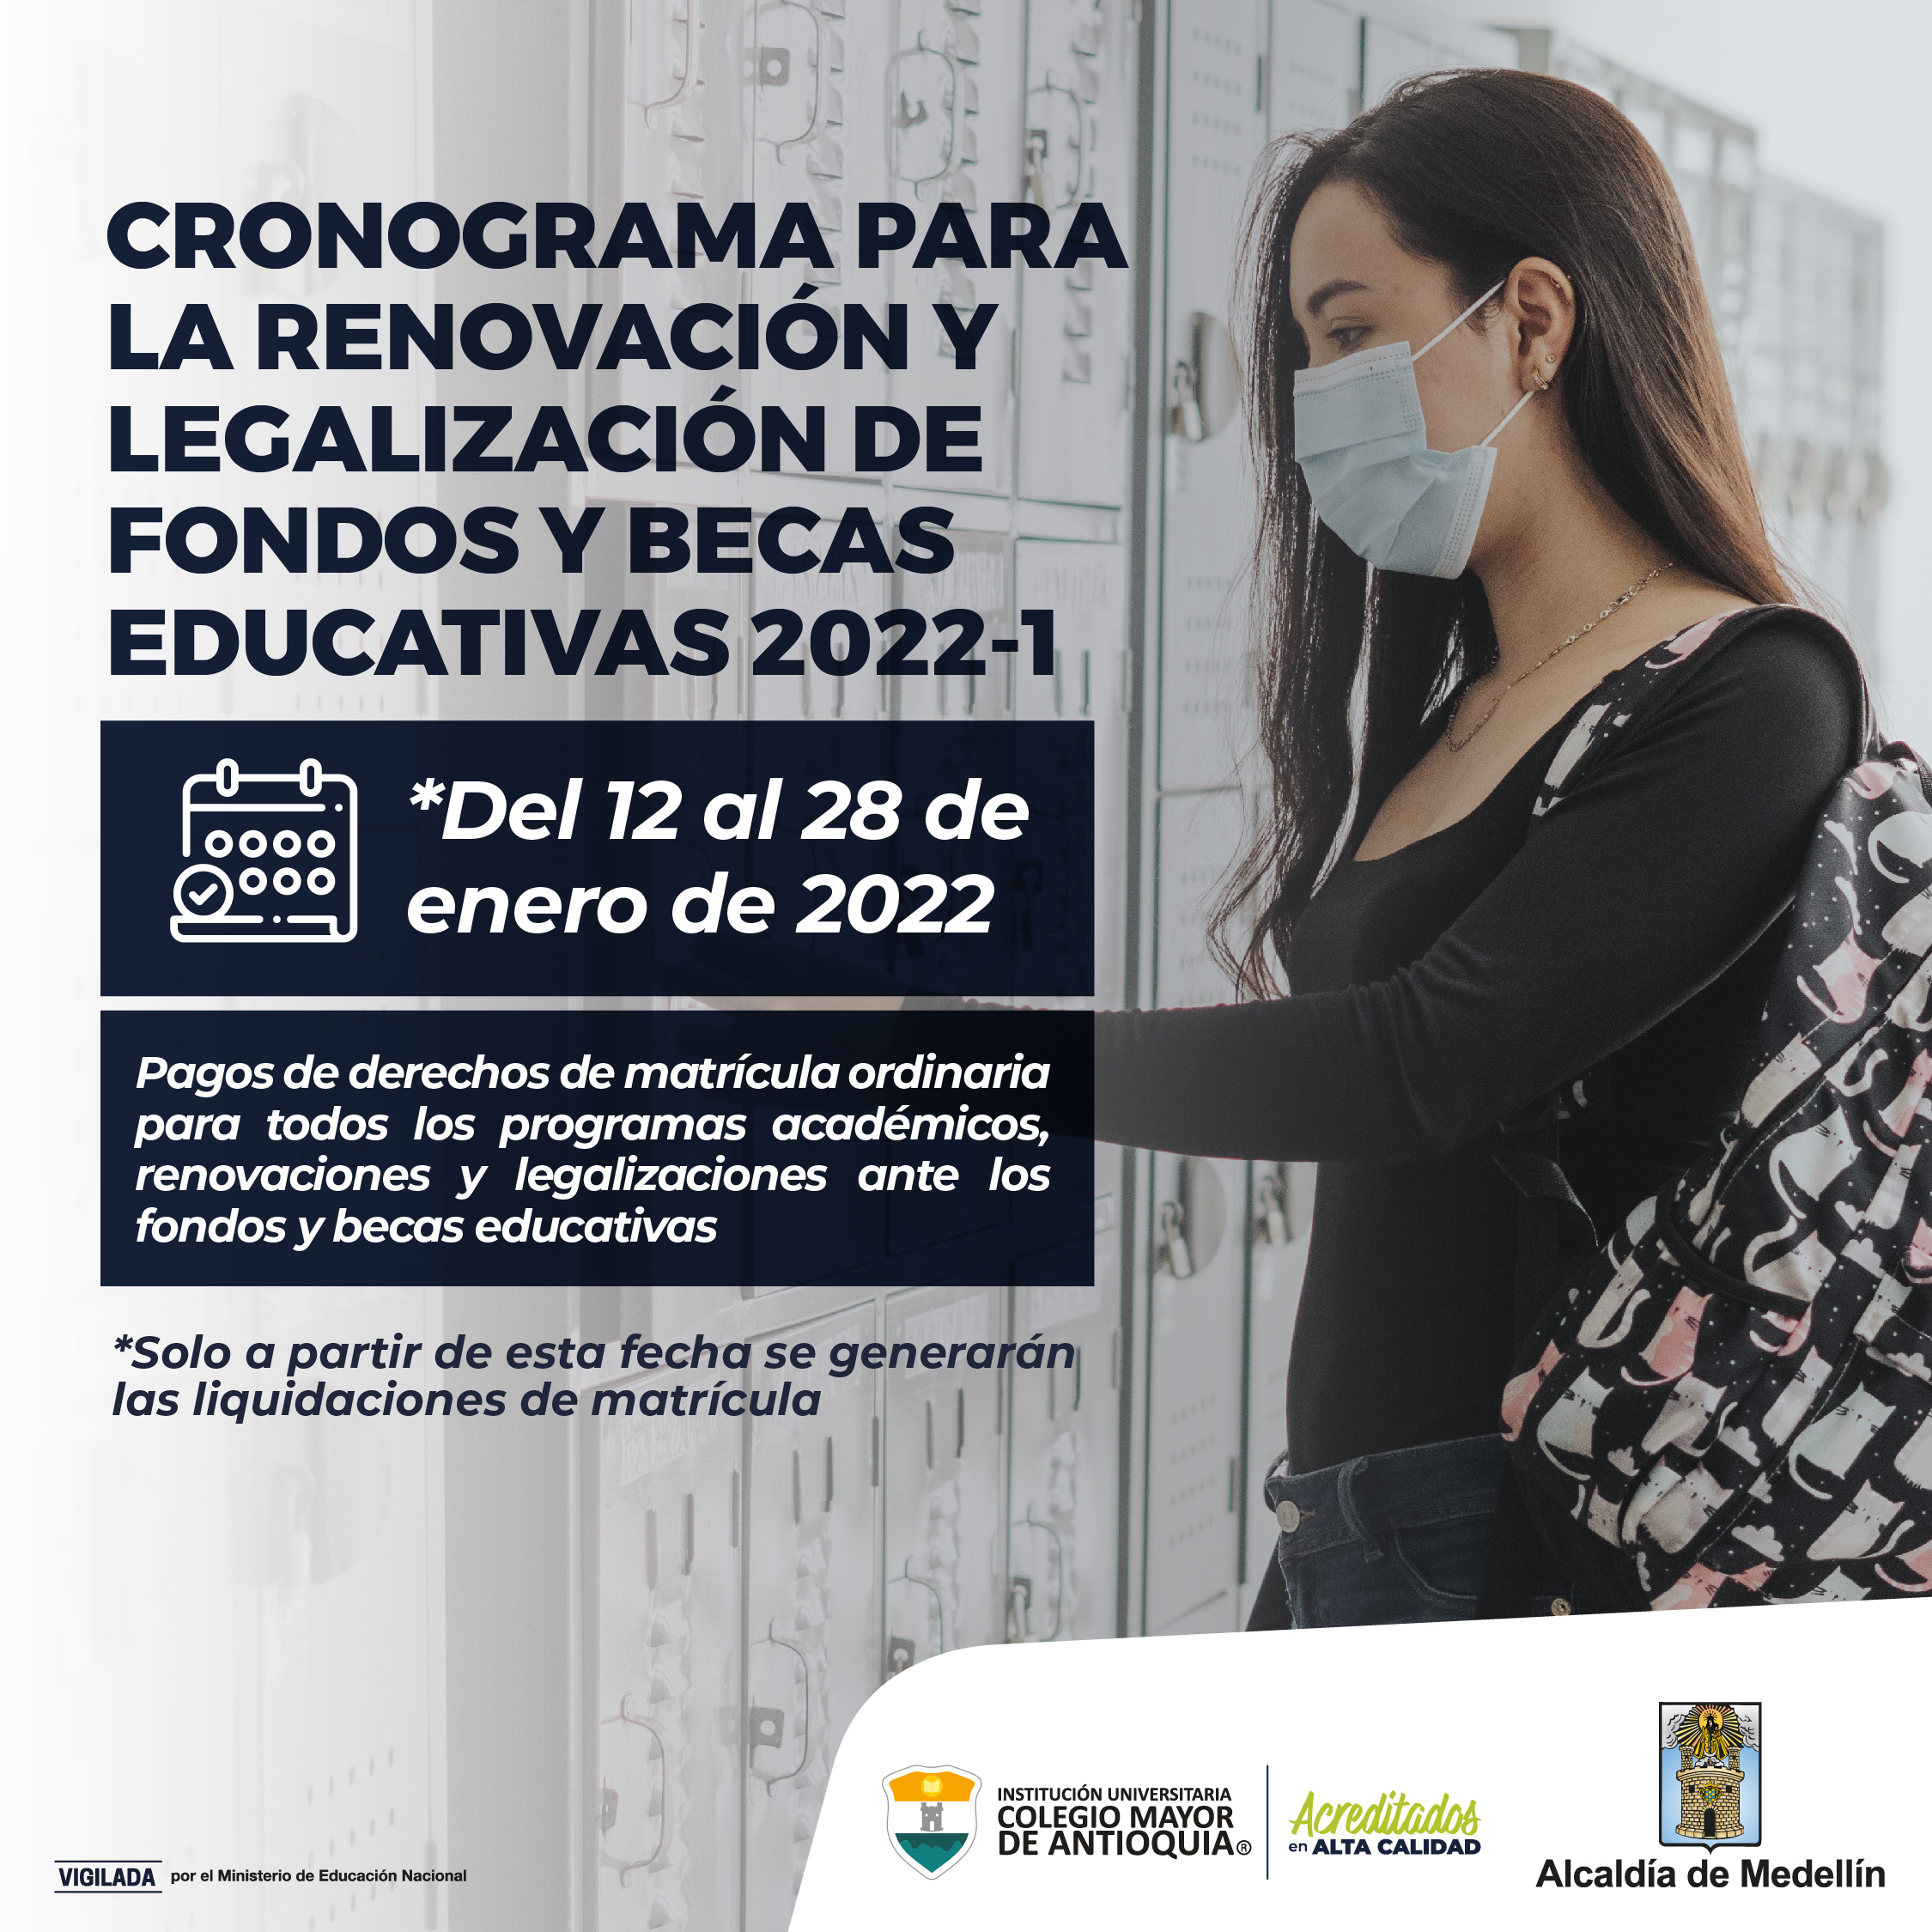 Cronograma para la renovación y legalización de fondos y becas educativas 2022-1